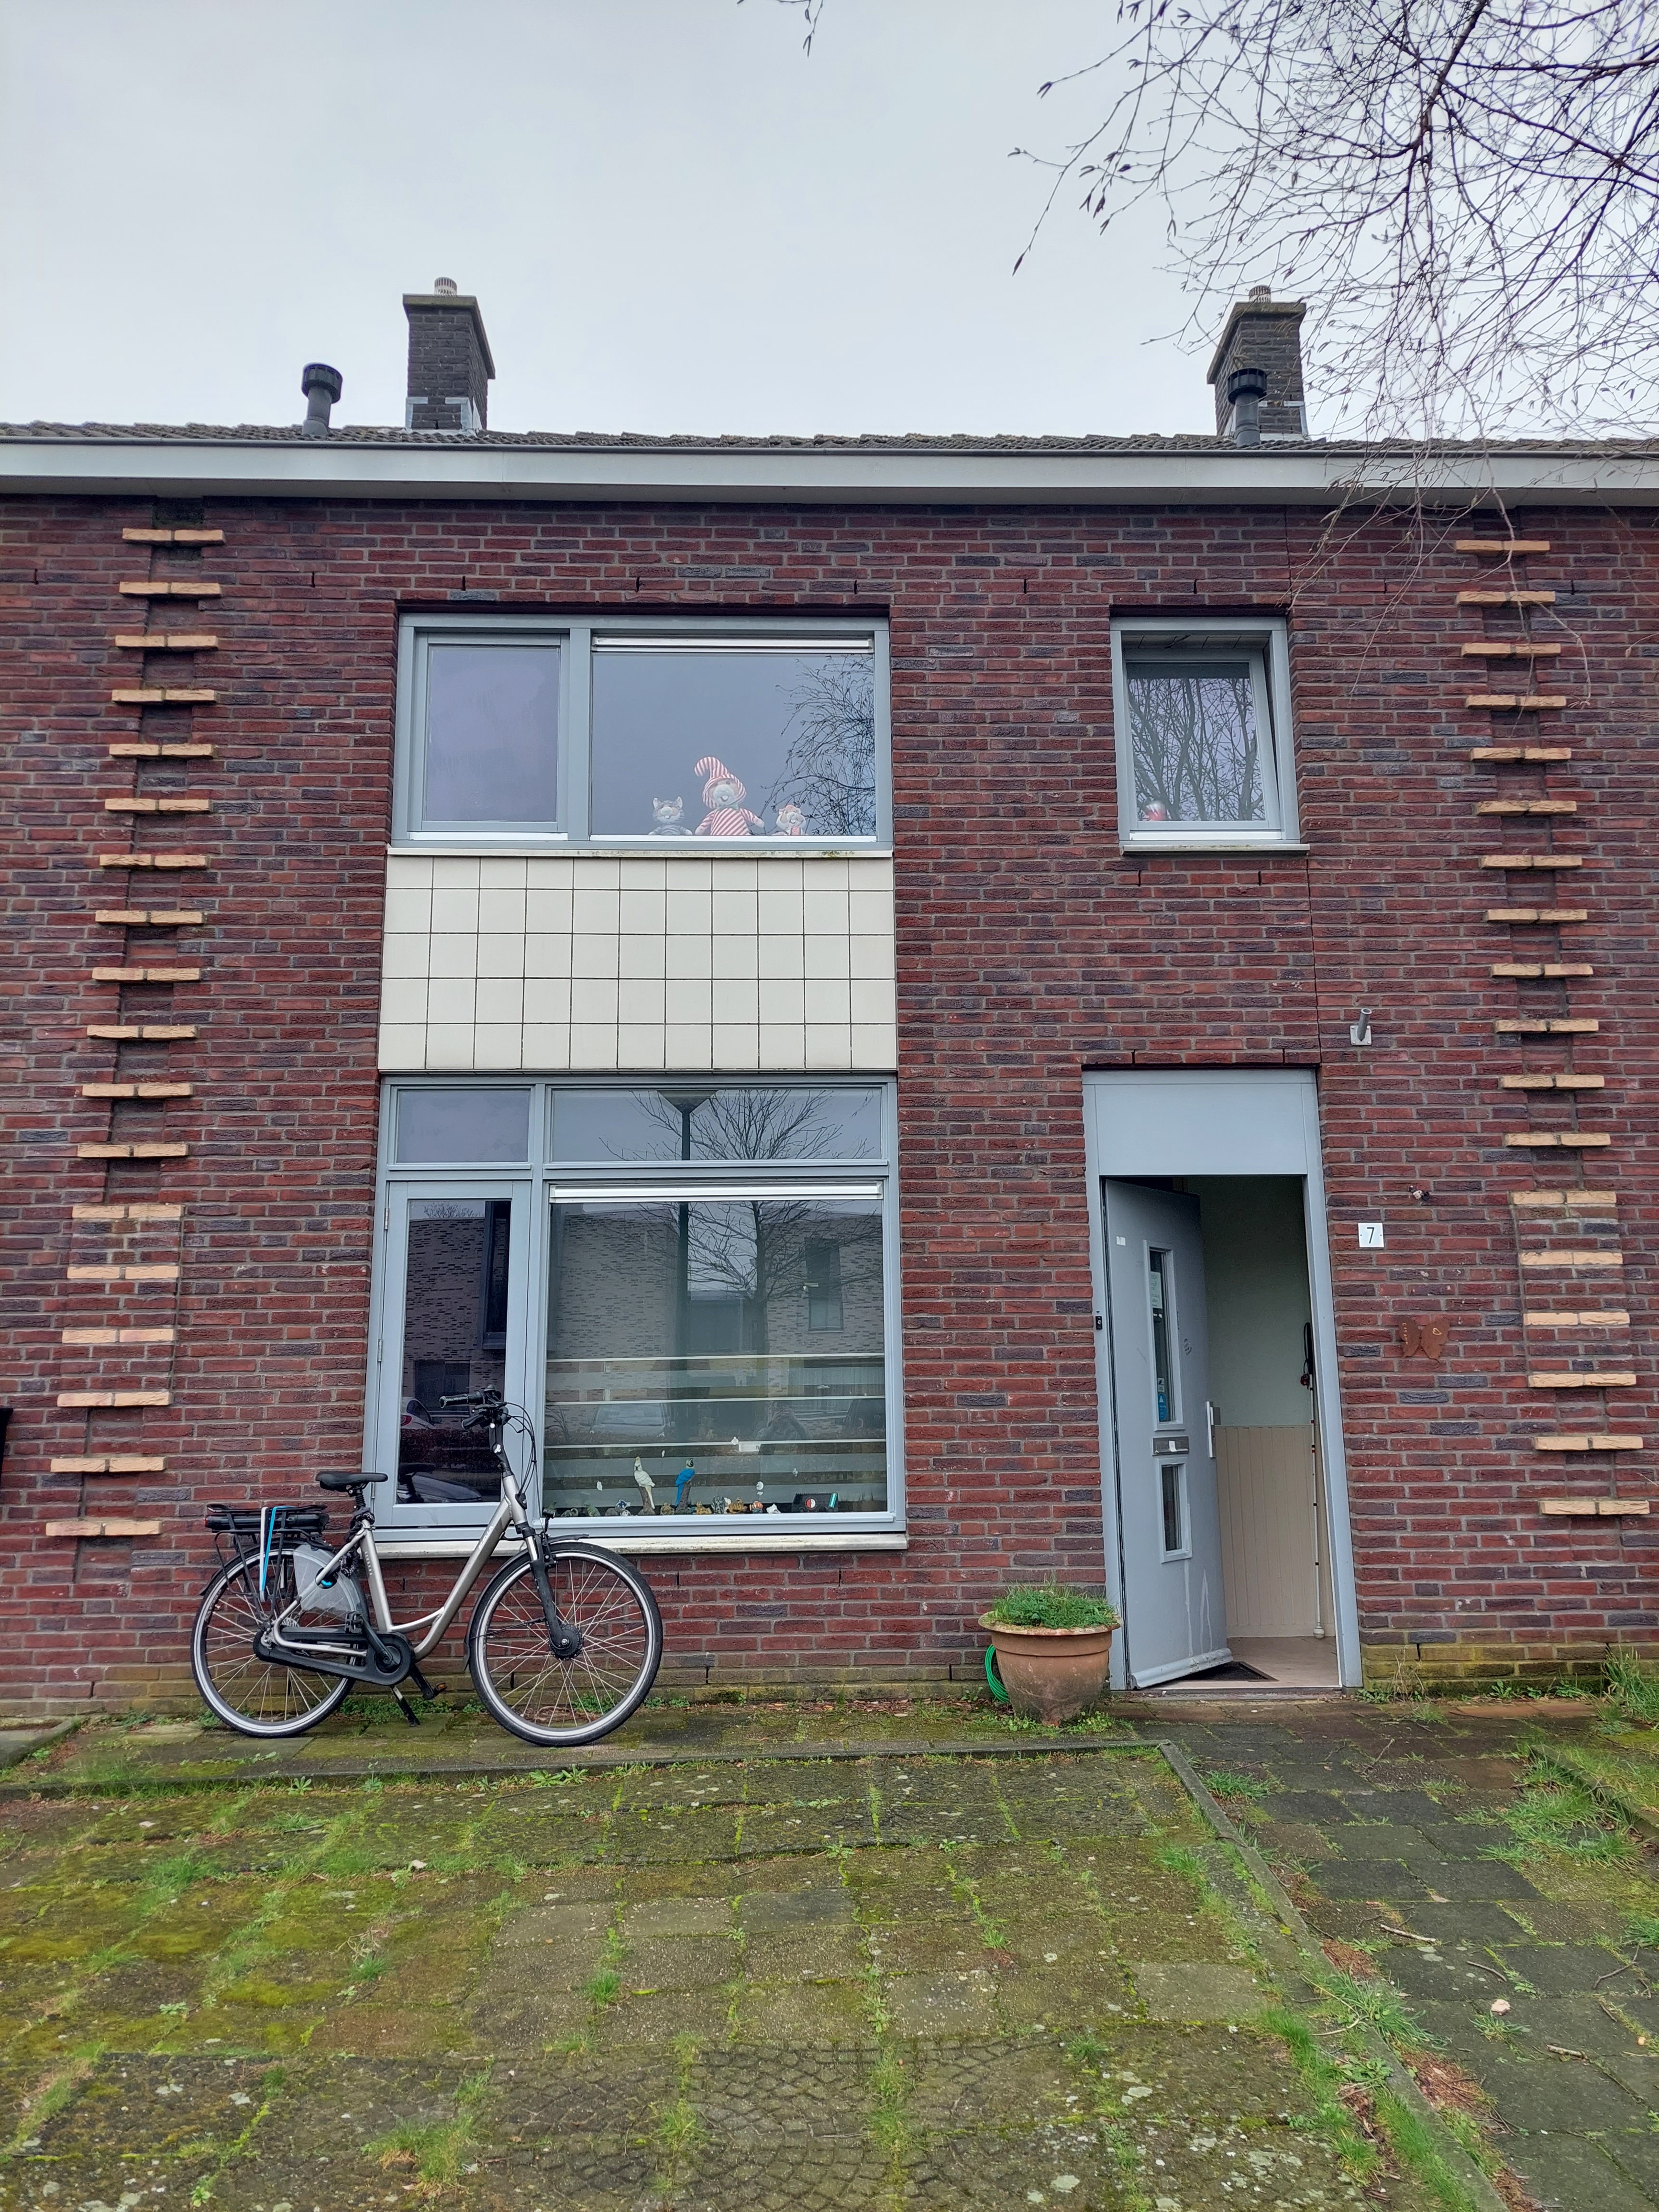 Jacob Ruysdaelstraat 7, 5171 XH Kaatsheuvel, Nederland